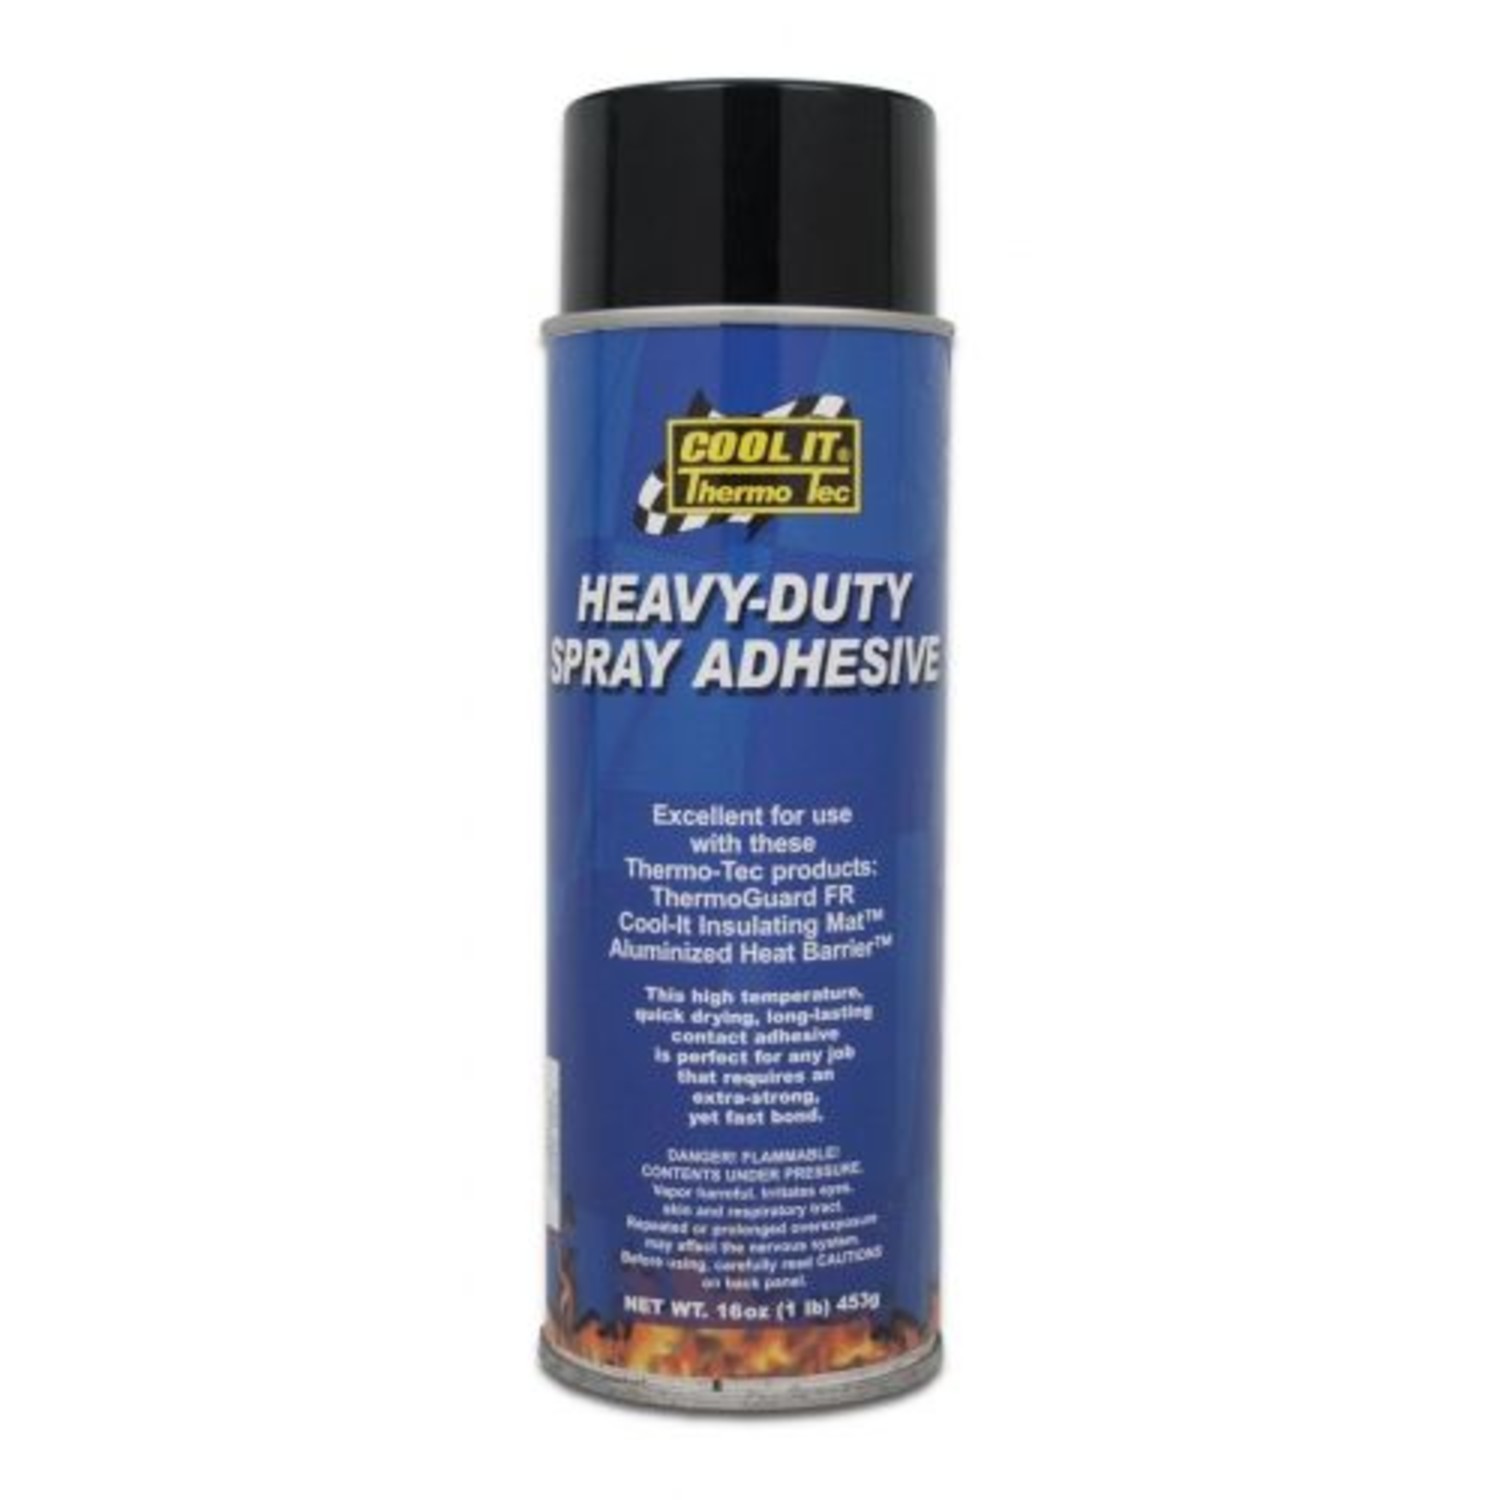 Heavy-Duty Spray Adhesive - Heat Shieldings